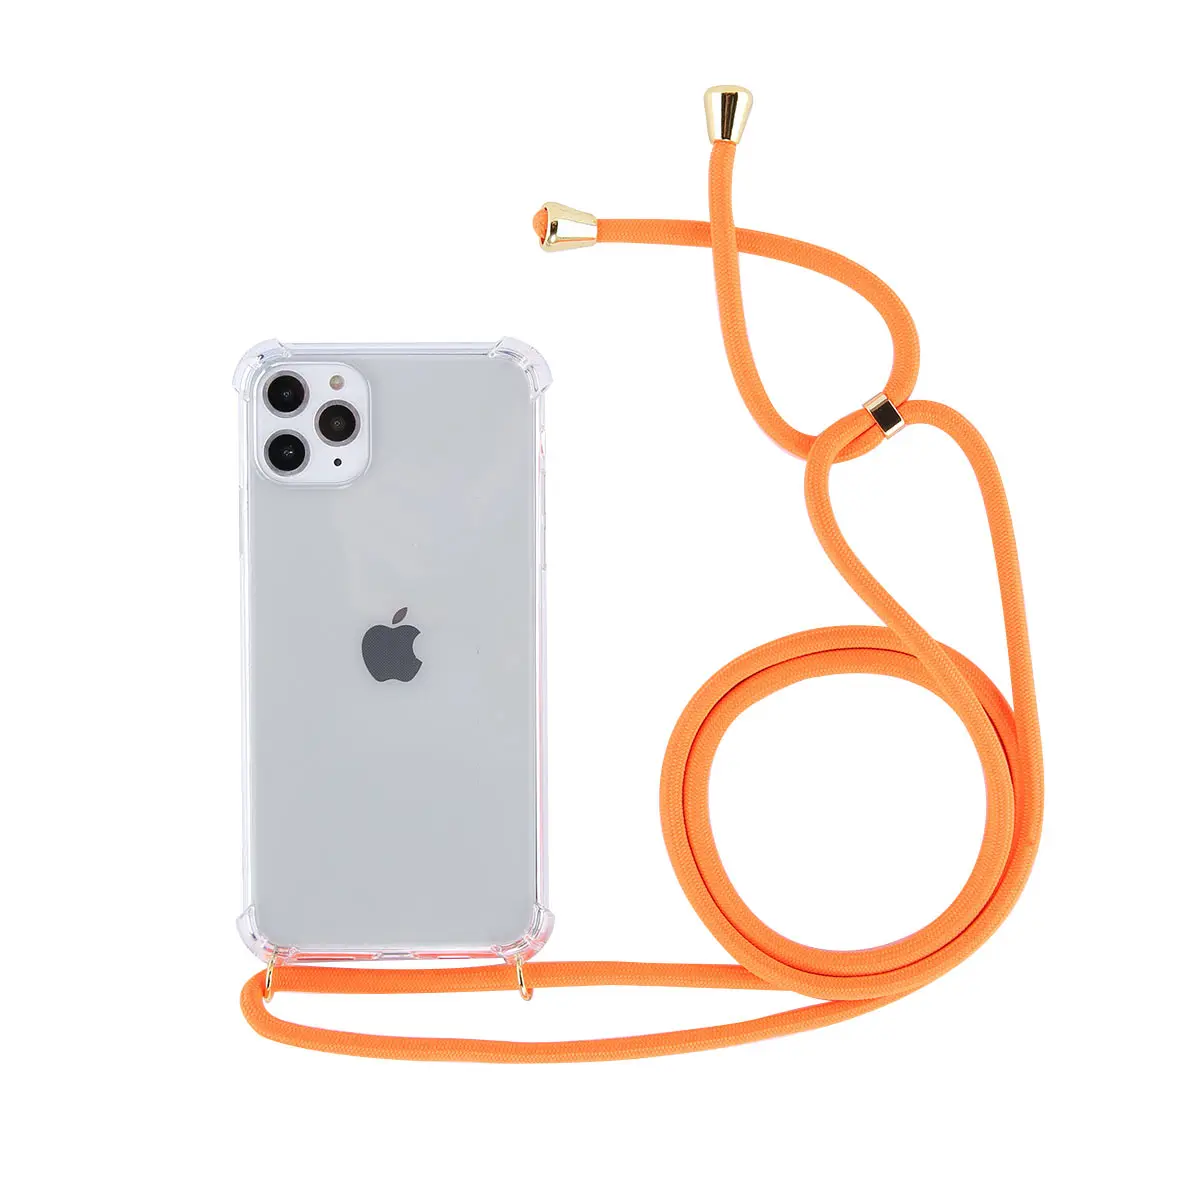 Ремешок шнур цепь лента для телефона ожерелье Ремешок Мобильный чехол для телефона чехол для переноски Чехол для iPhone 11 Pro XS Max XR X 7 Plus 8 Plus - Цвет: Оранжевый